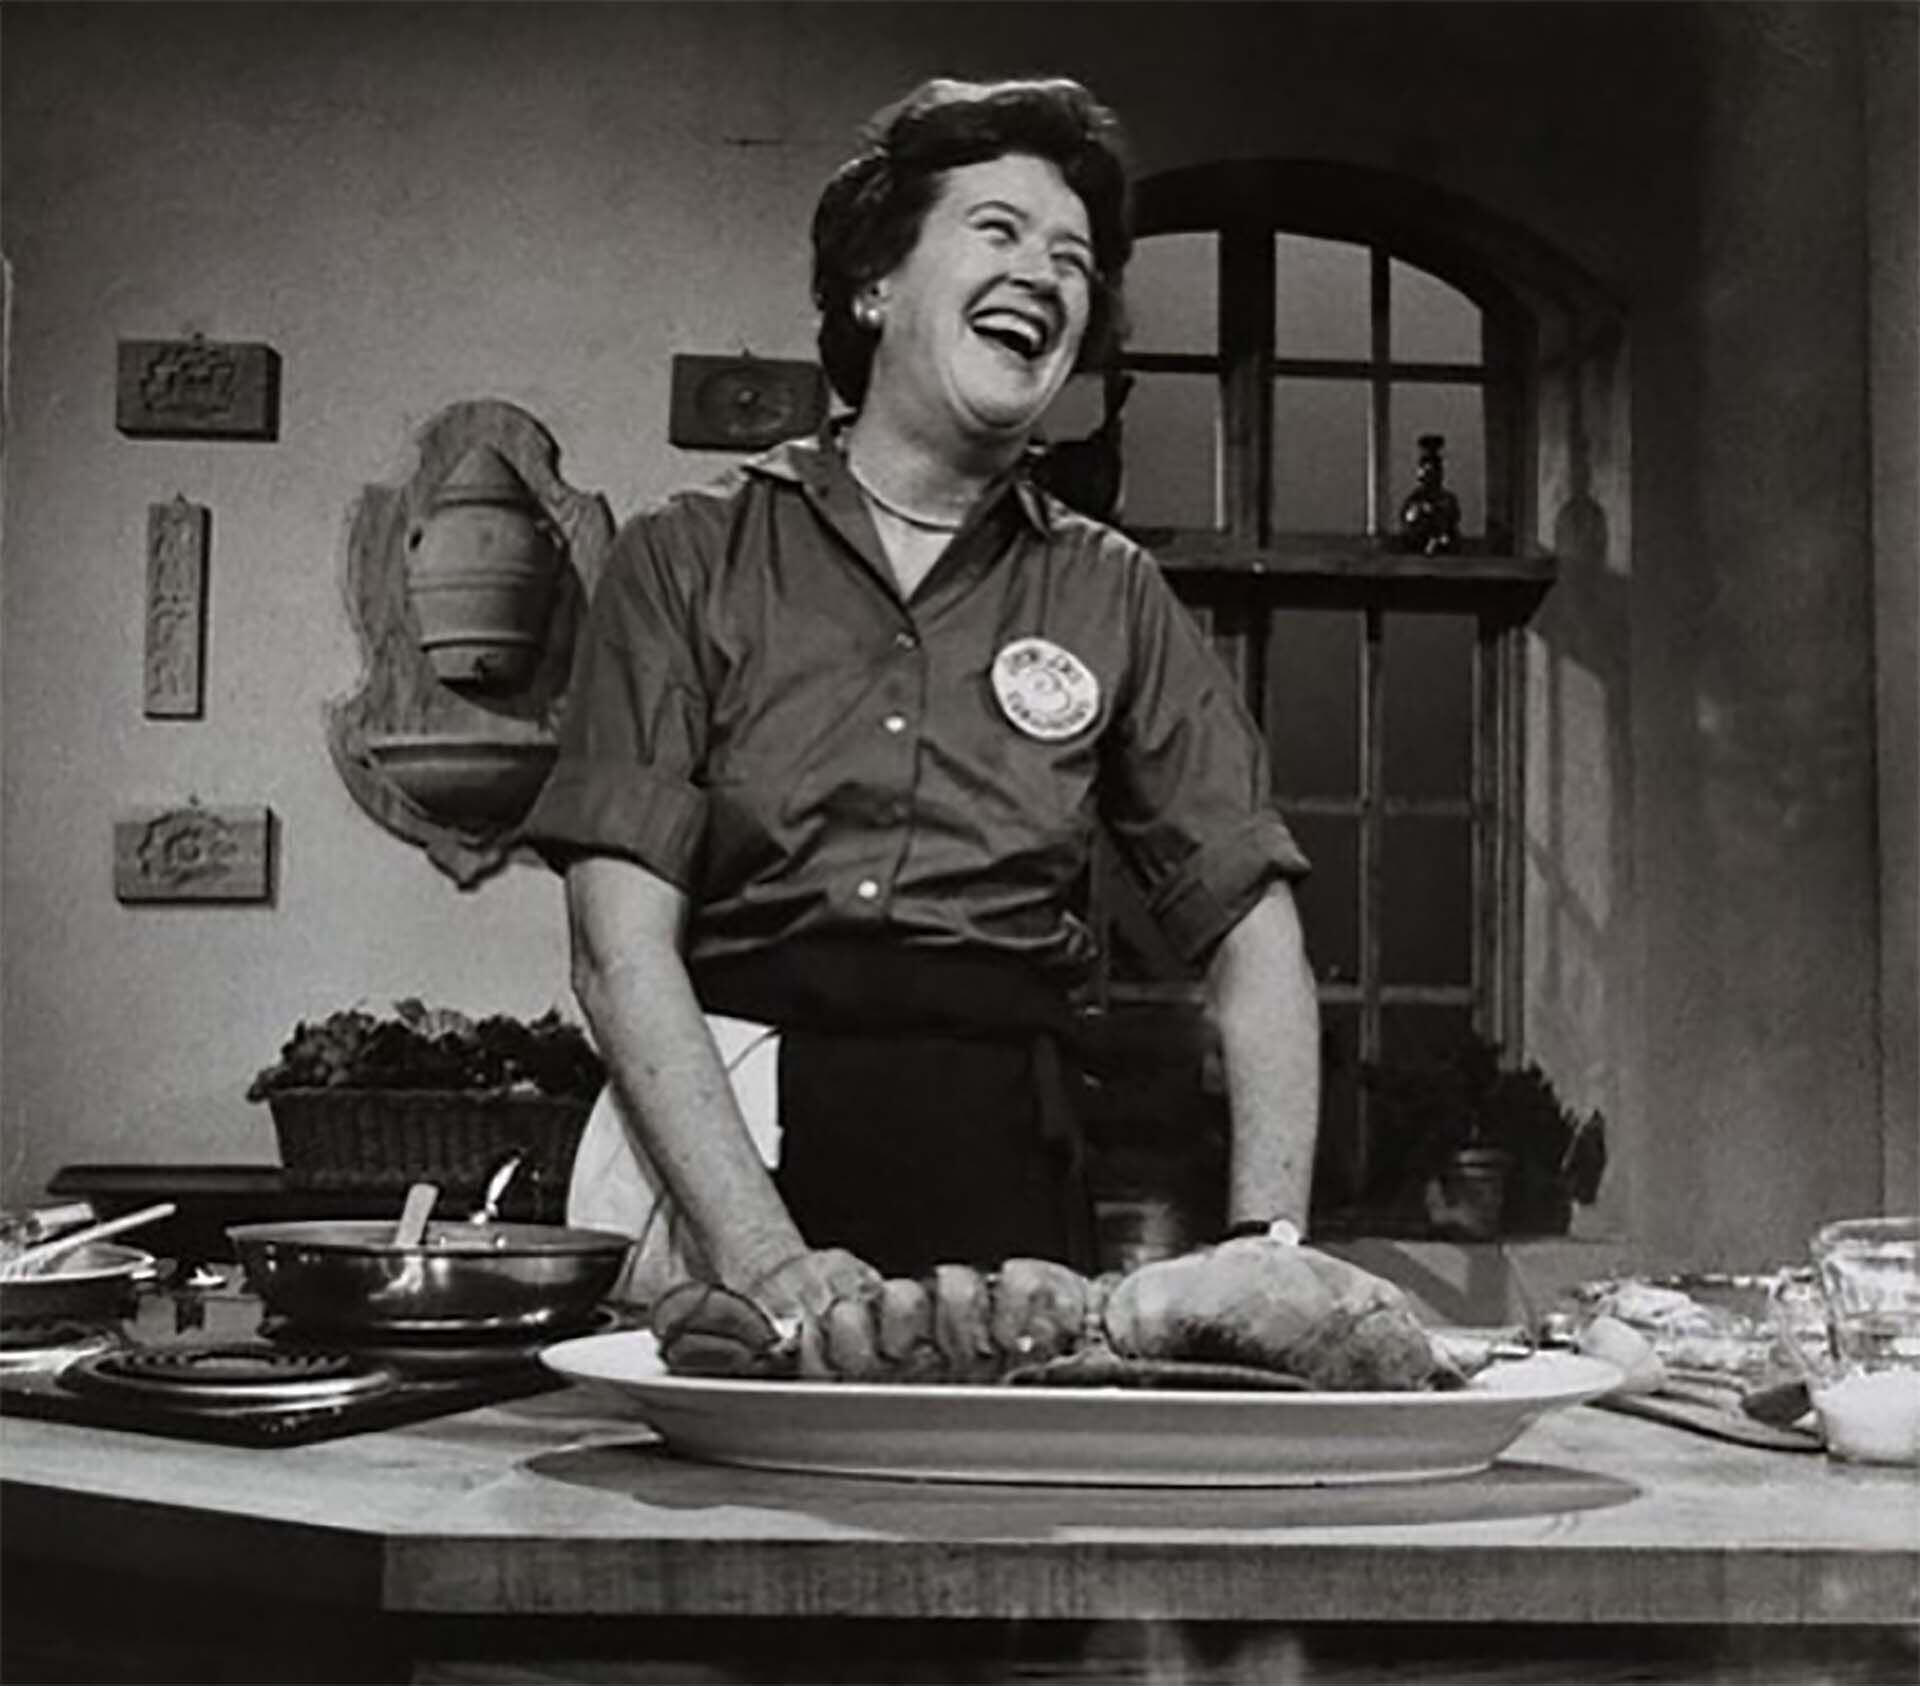 La célebre cocinera Julia Child (1912-2004), quien popularizó la cocina francesa en Estados Unidos